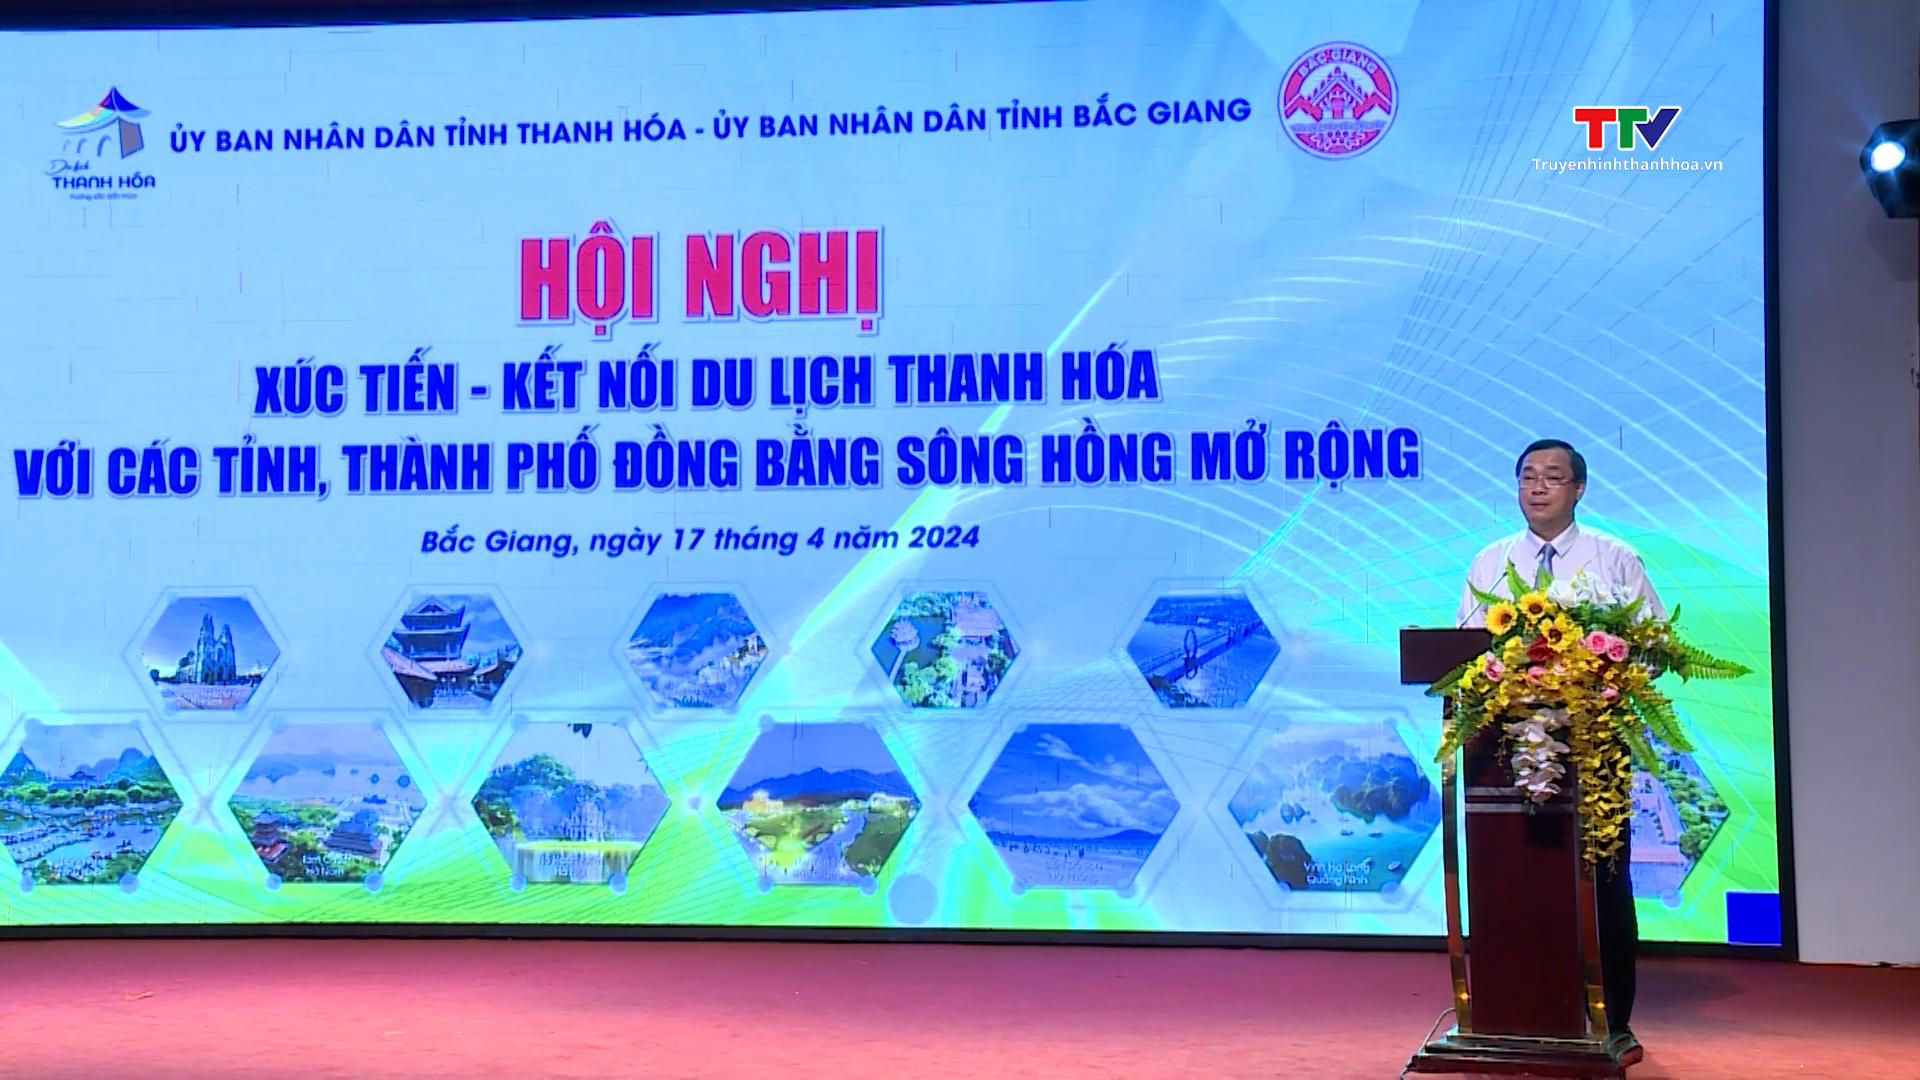 Hội nghị liên kết phát triển du lịch tỉnh Thanh Hóa với các tỉnh, thành phố Đồng bằng sông Hồng- Ảnh 2.